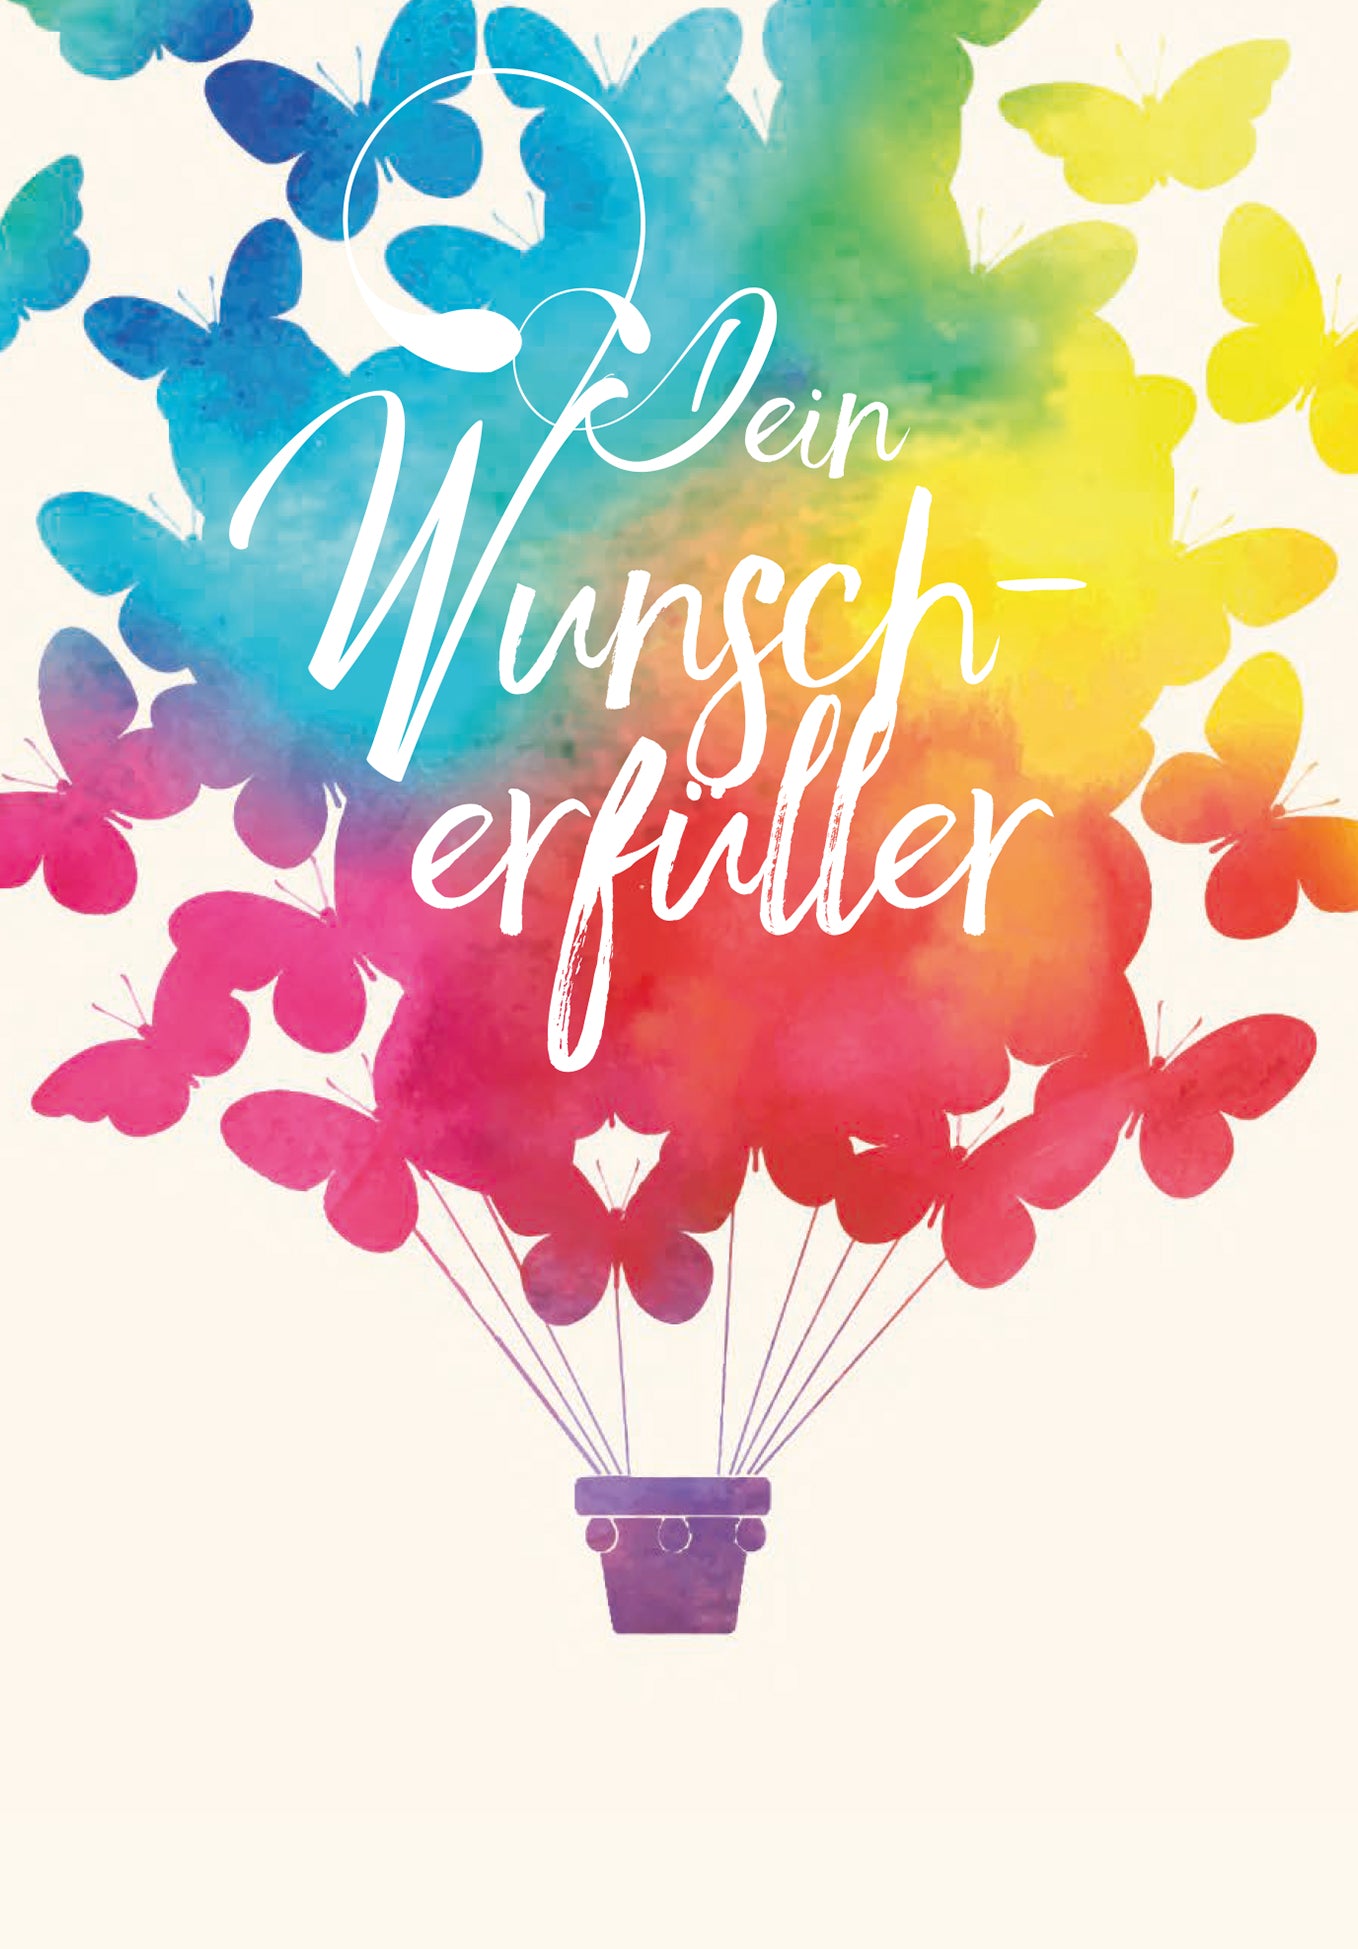 Der Wunscherfüller - Schmetterling (Optional: With logo for an additional € 2)